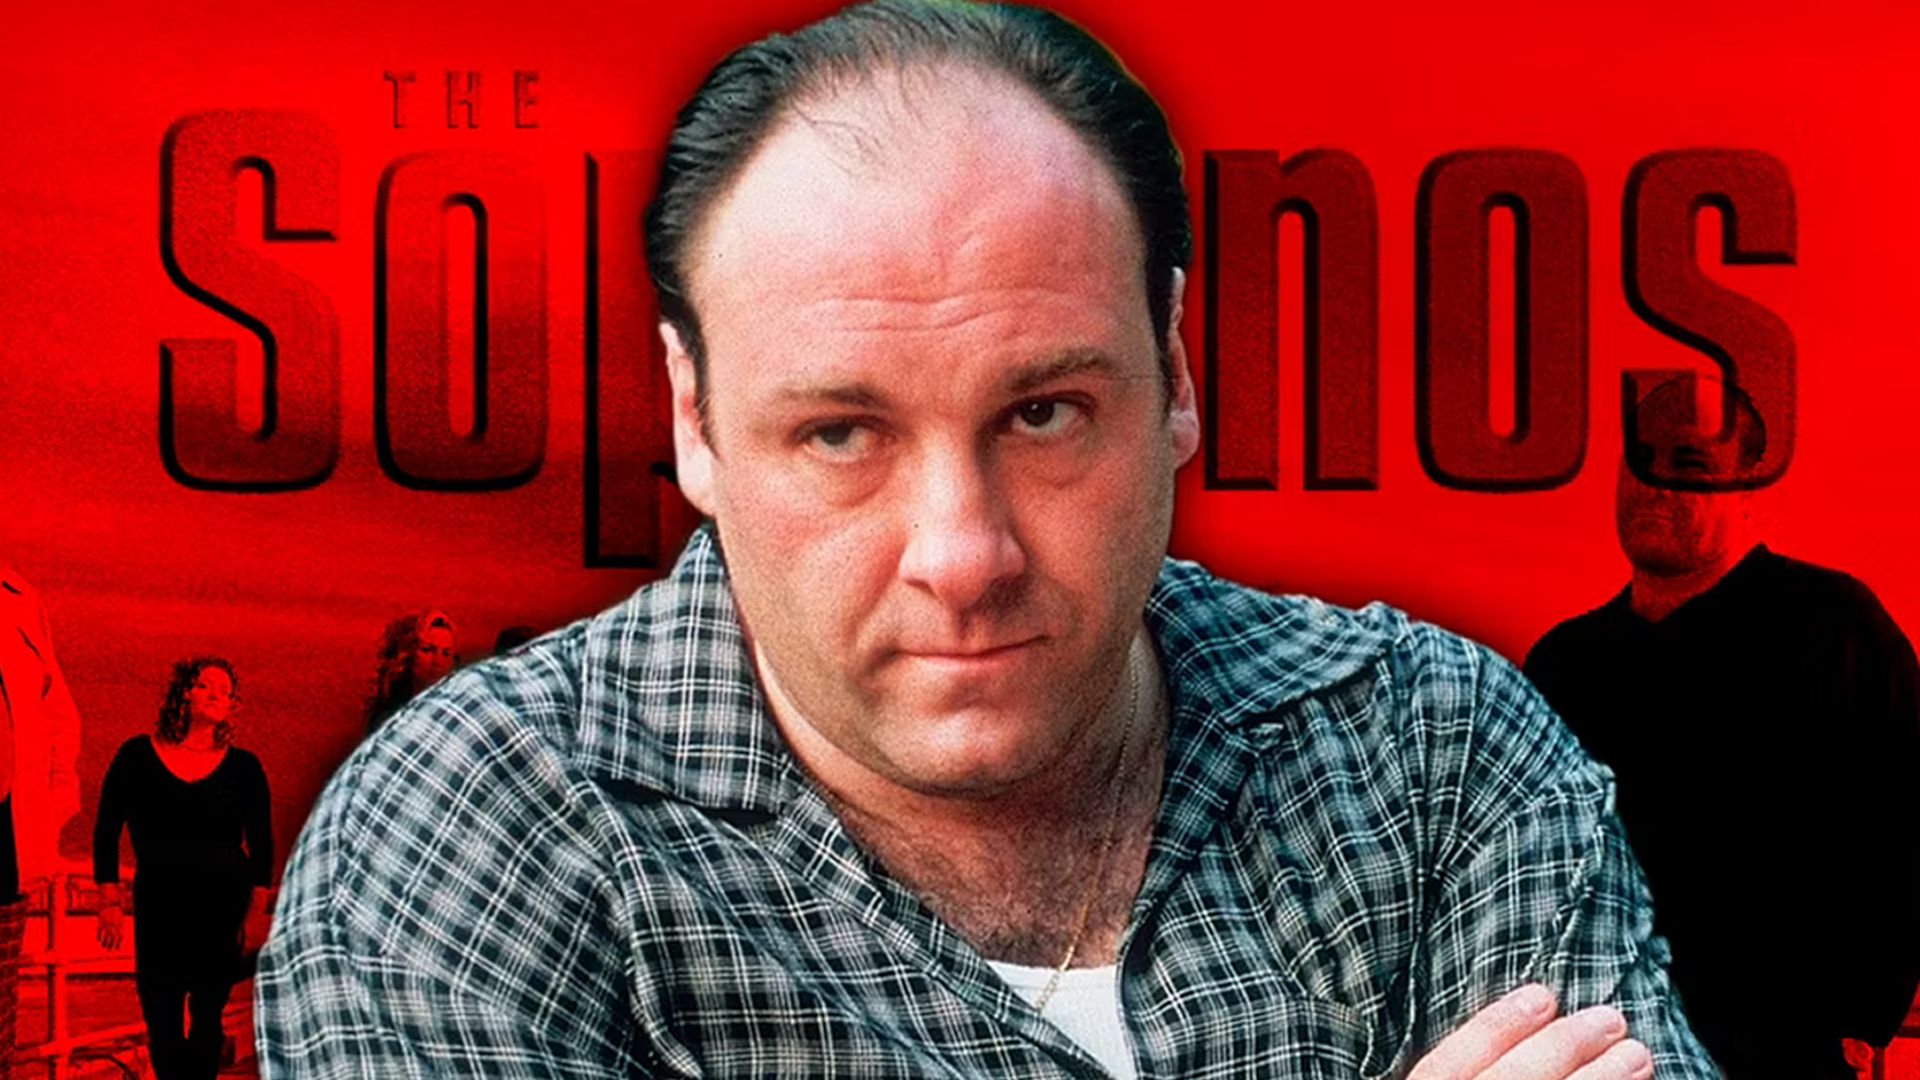 James Gandolfini as Tony Soprano in The Sopranos